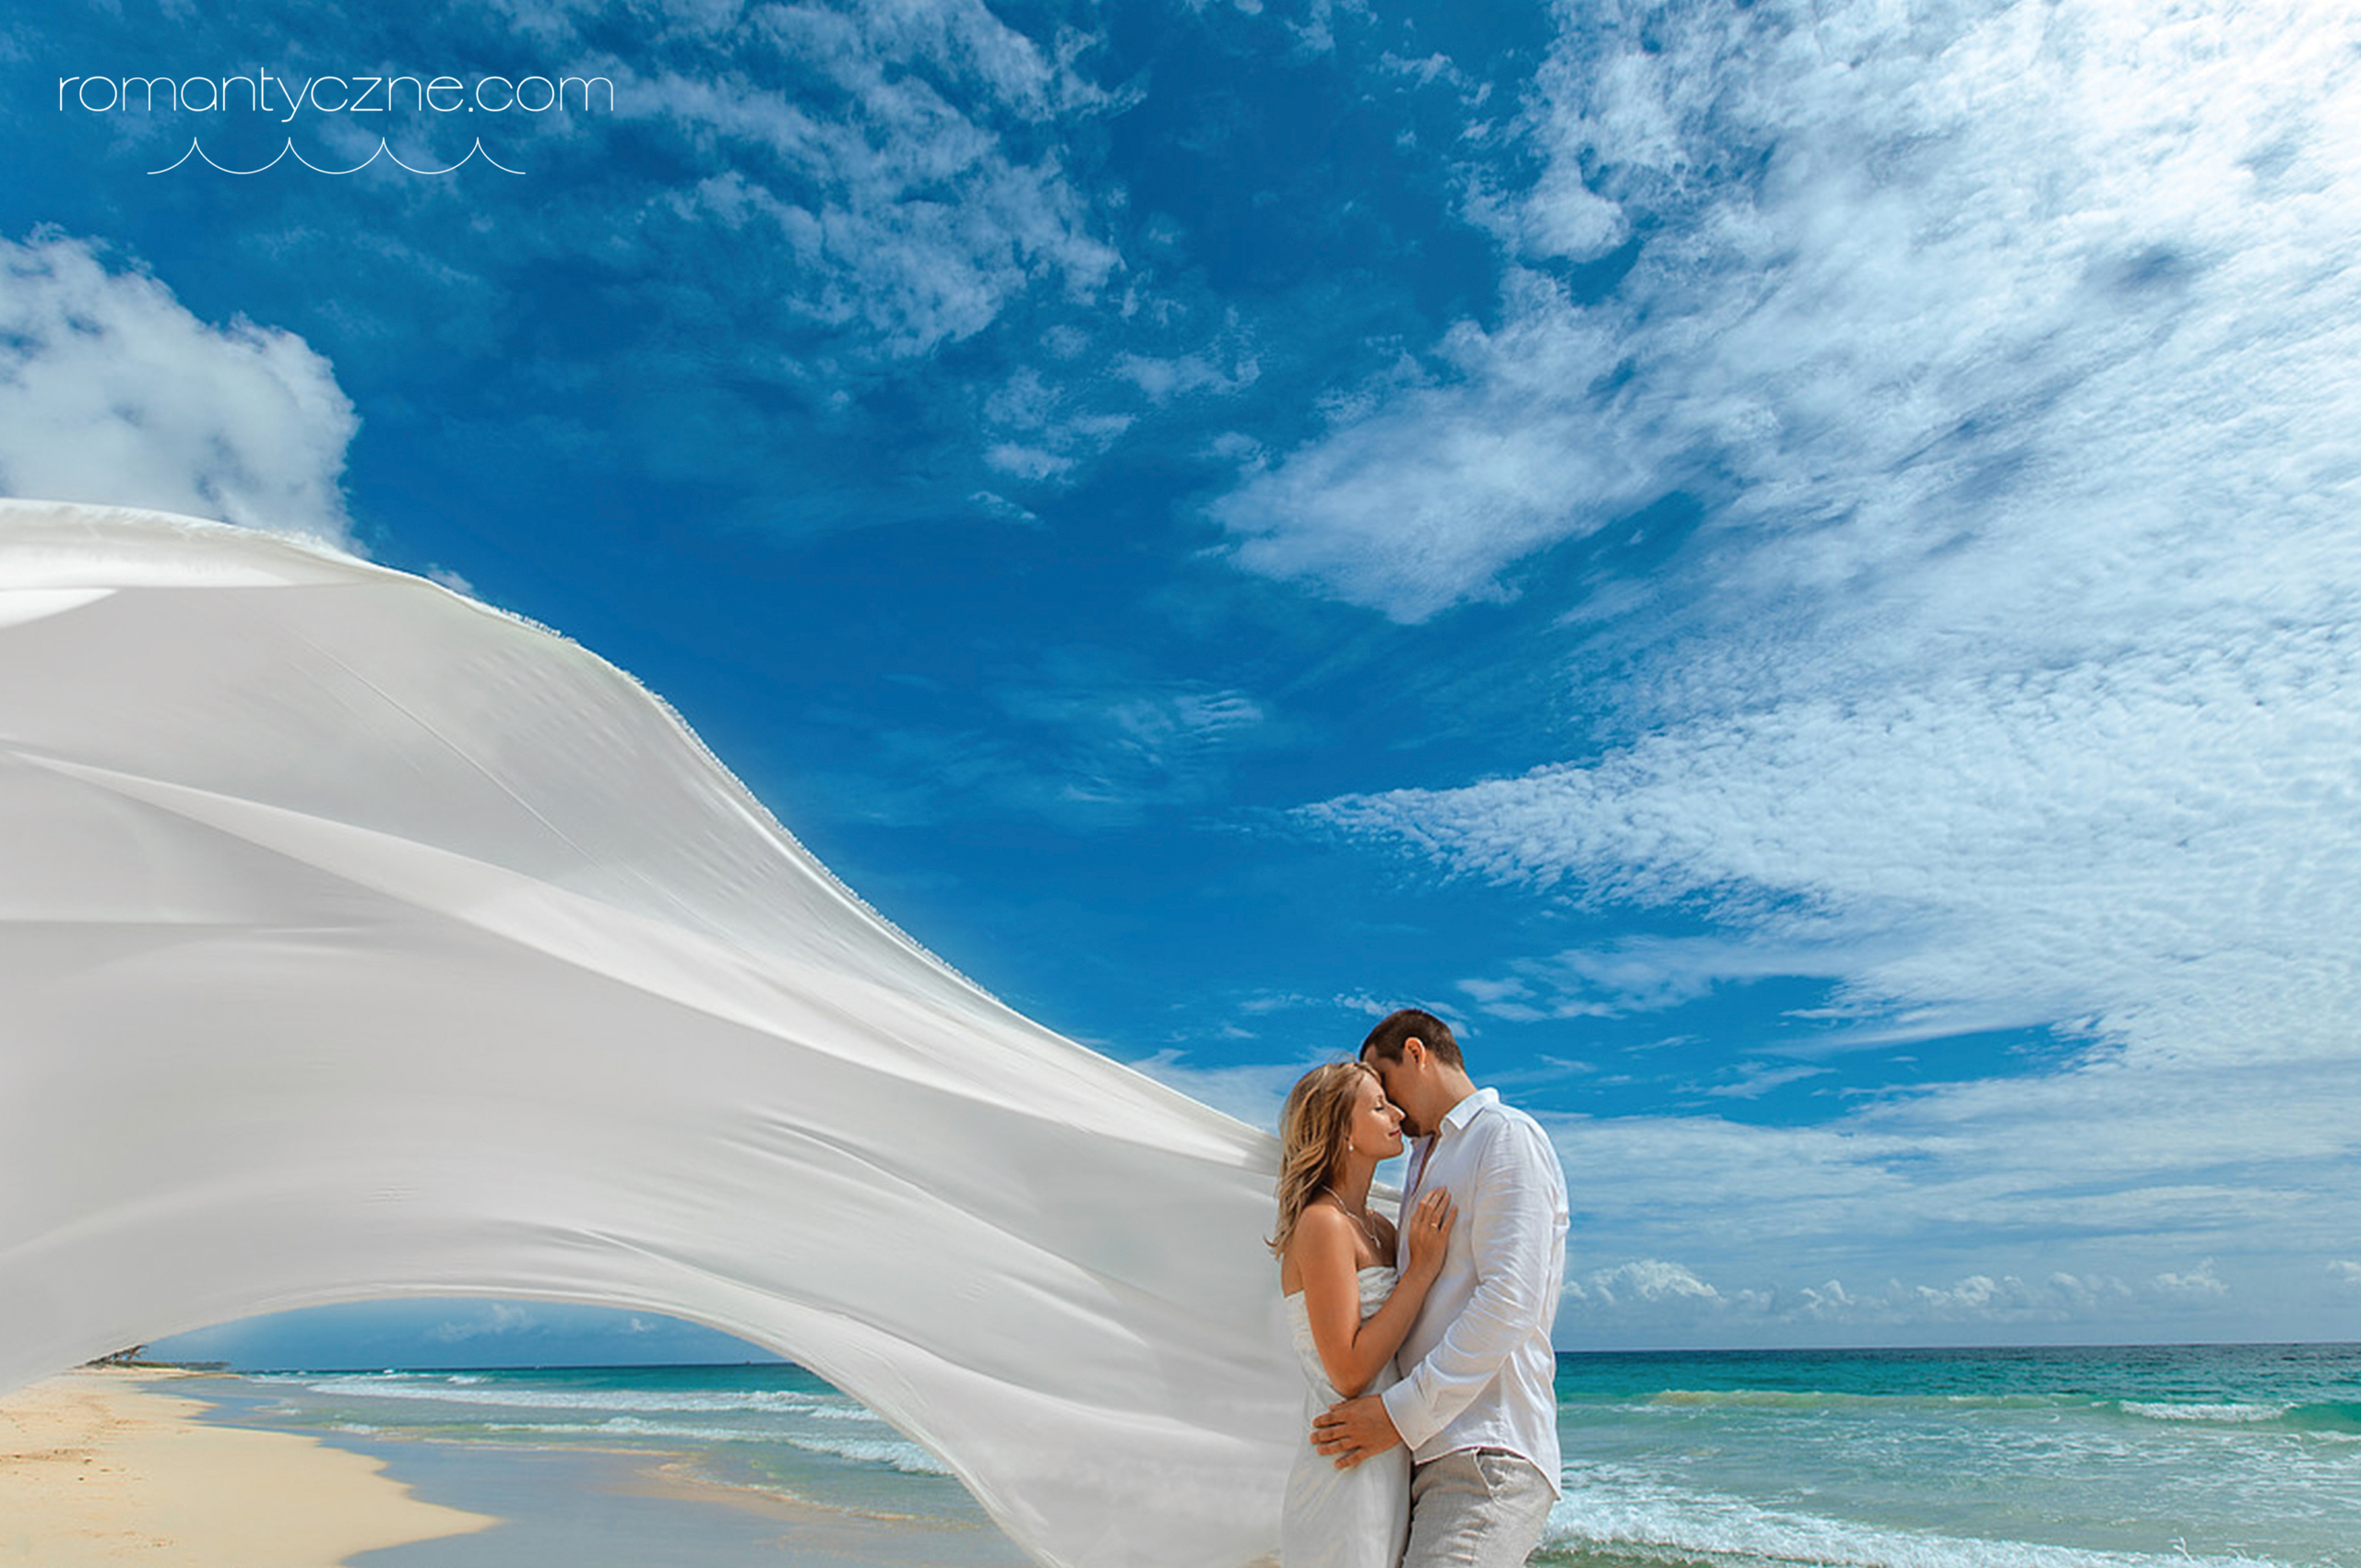 młoda para całująca się na rajskiej plaży - wiatr rozwiewa szal panny młodej